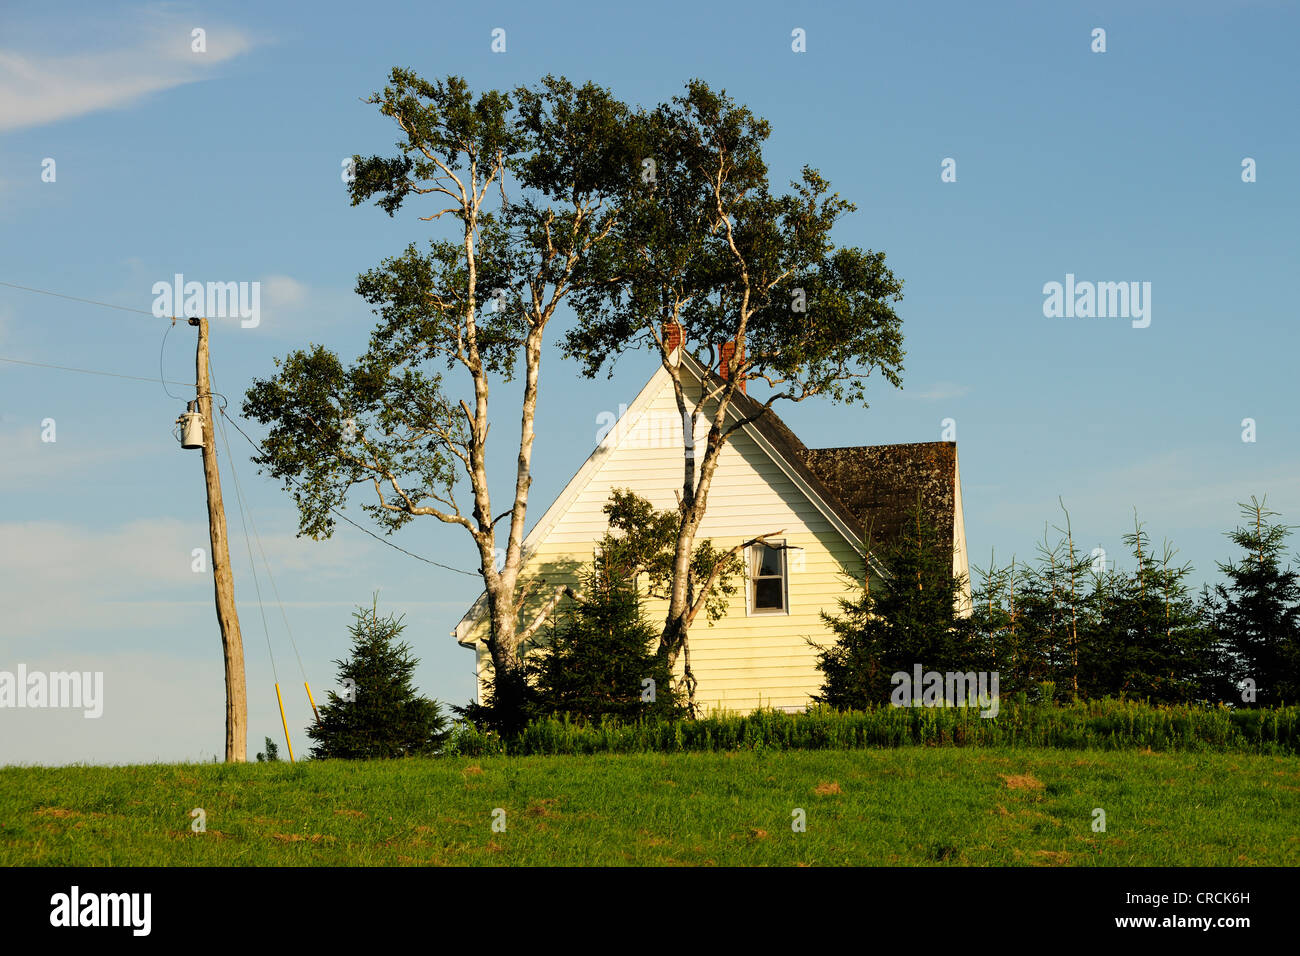 Maison solitaire sur une colline, près de Cavendish, Prince Edward Island, Canada, Amérique du Nord Banque D'Images